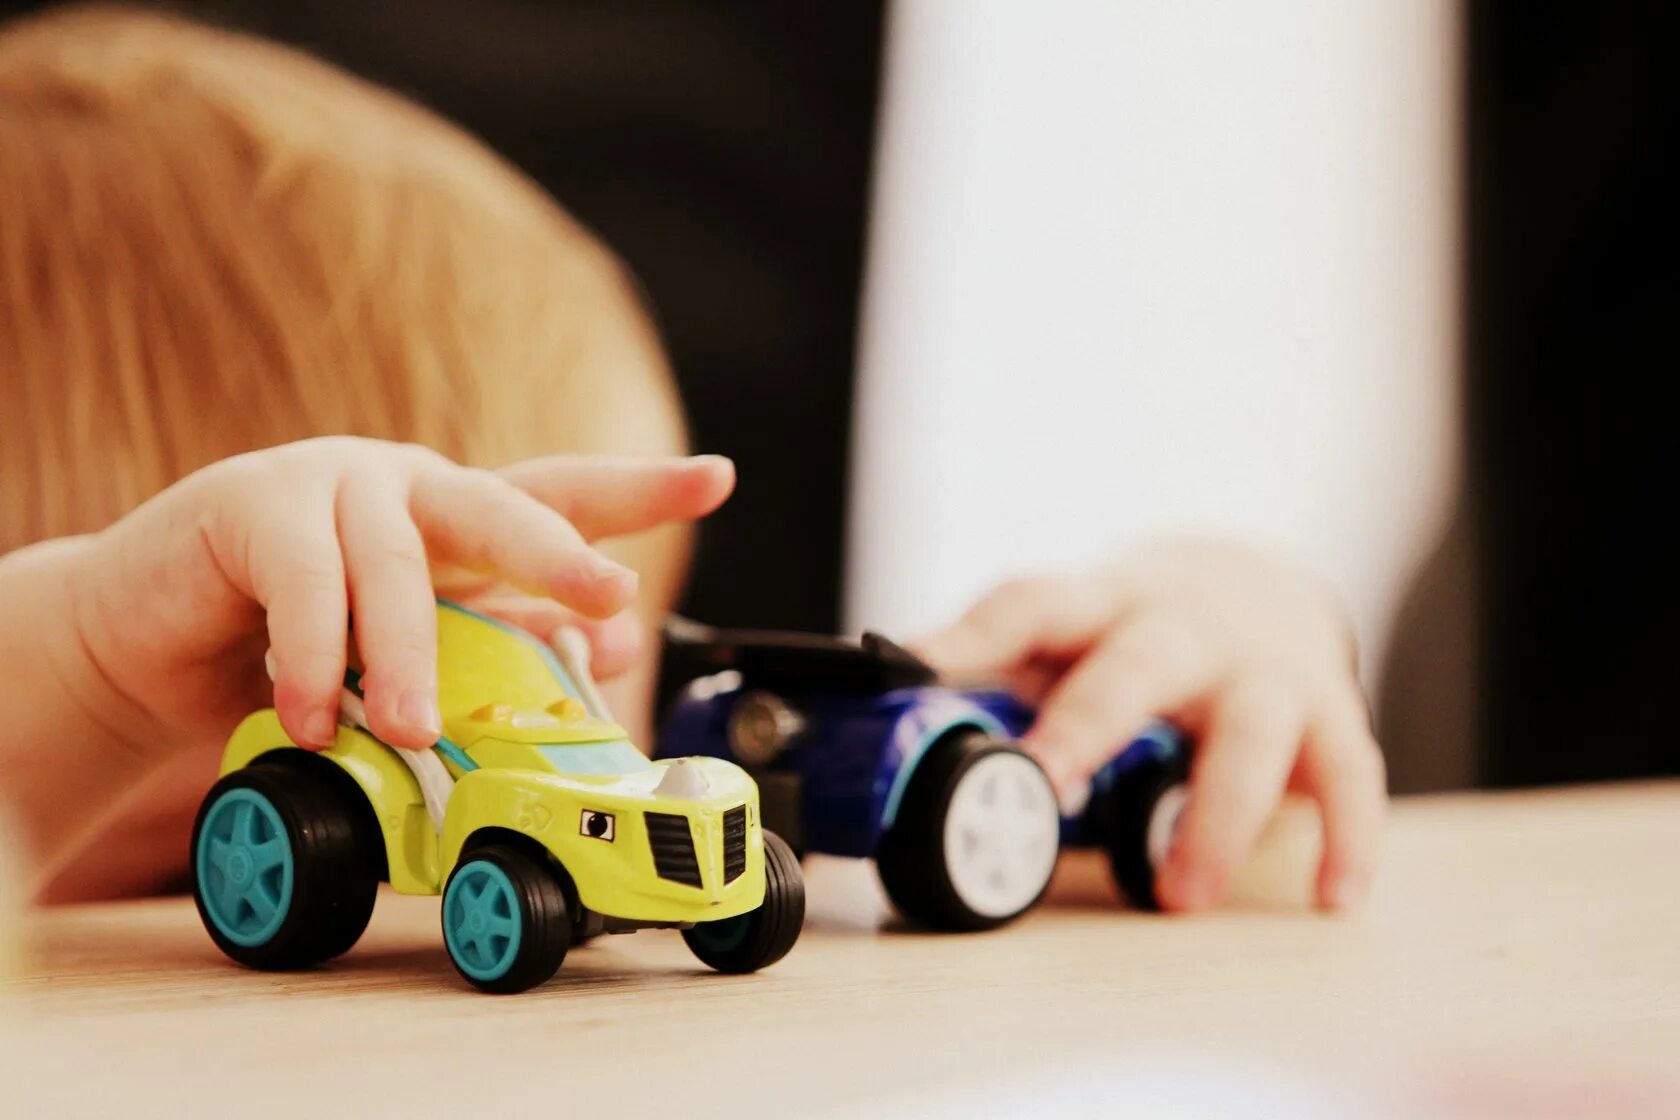 Бебинокль. Современные детские игрушки. Игрушка Toy cars. Дети играют в машинки. Инновационные игрушки.